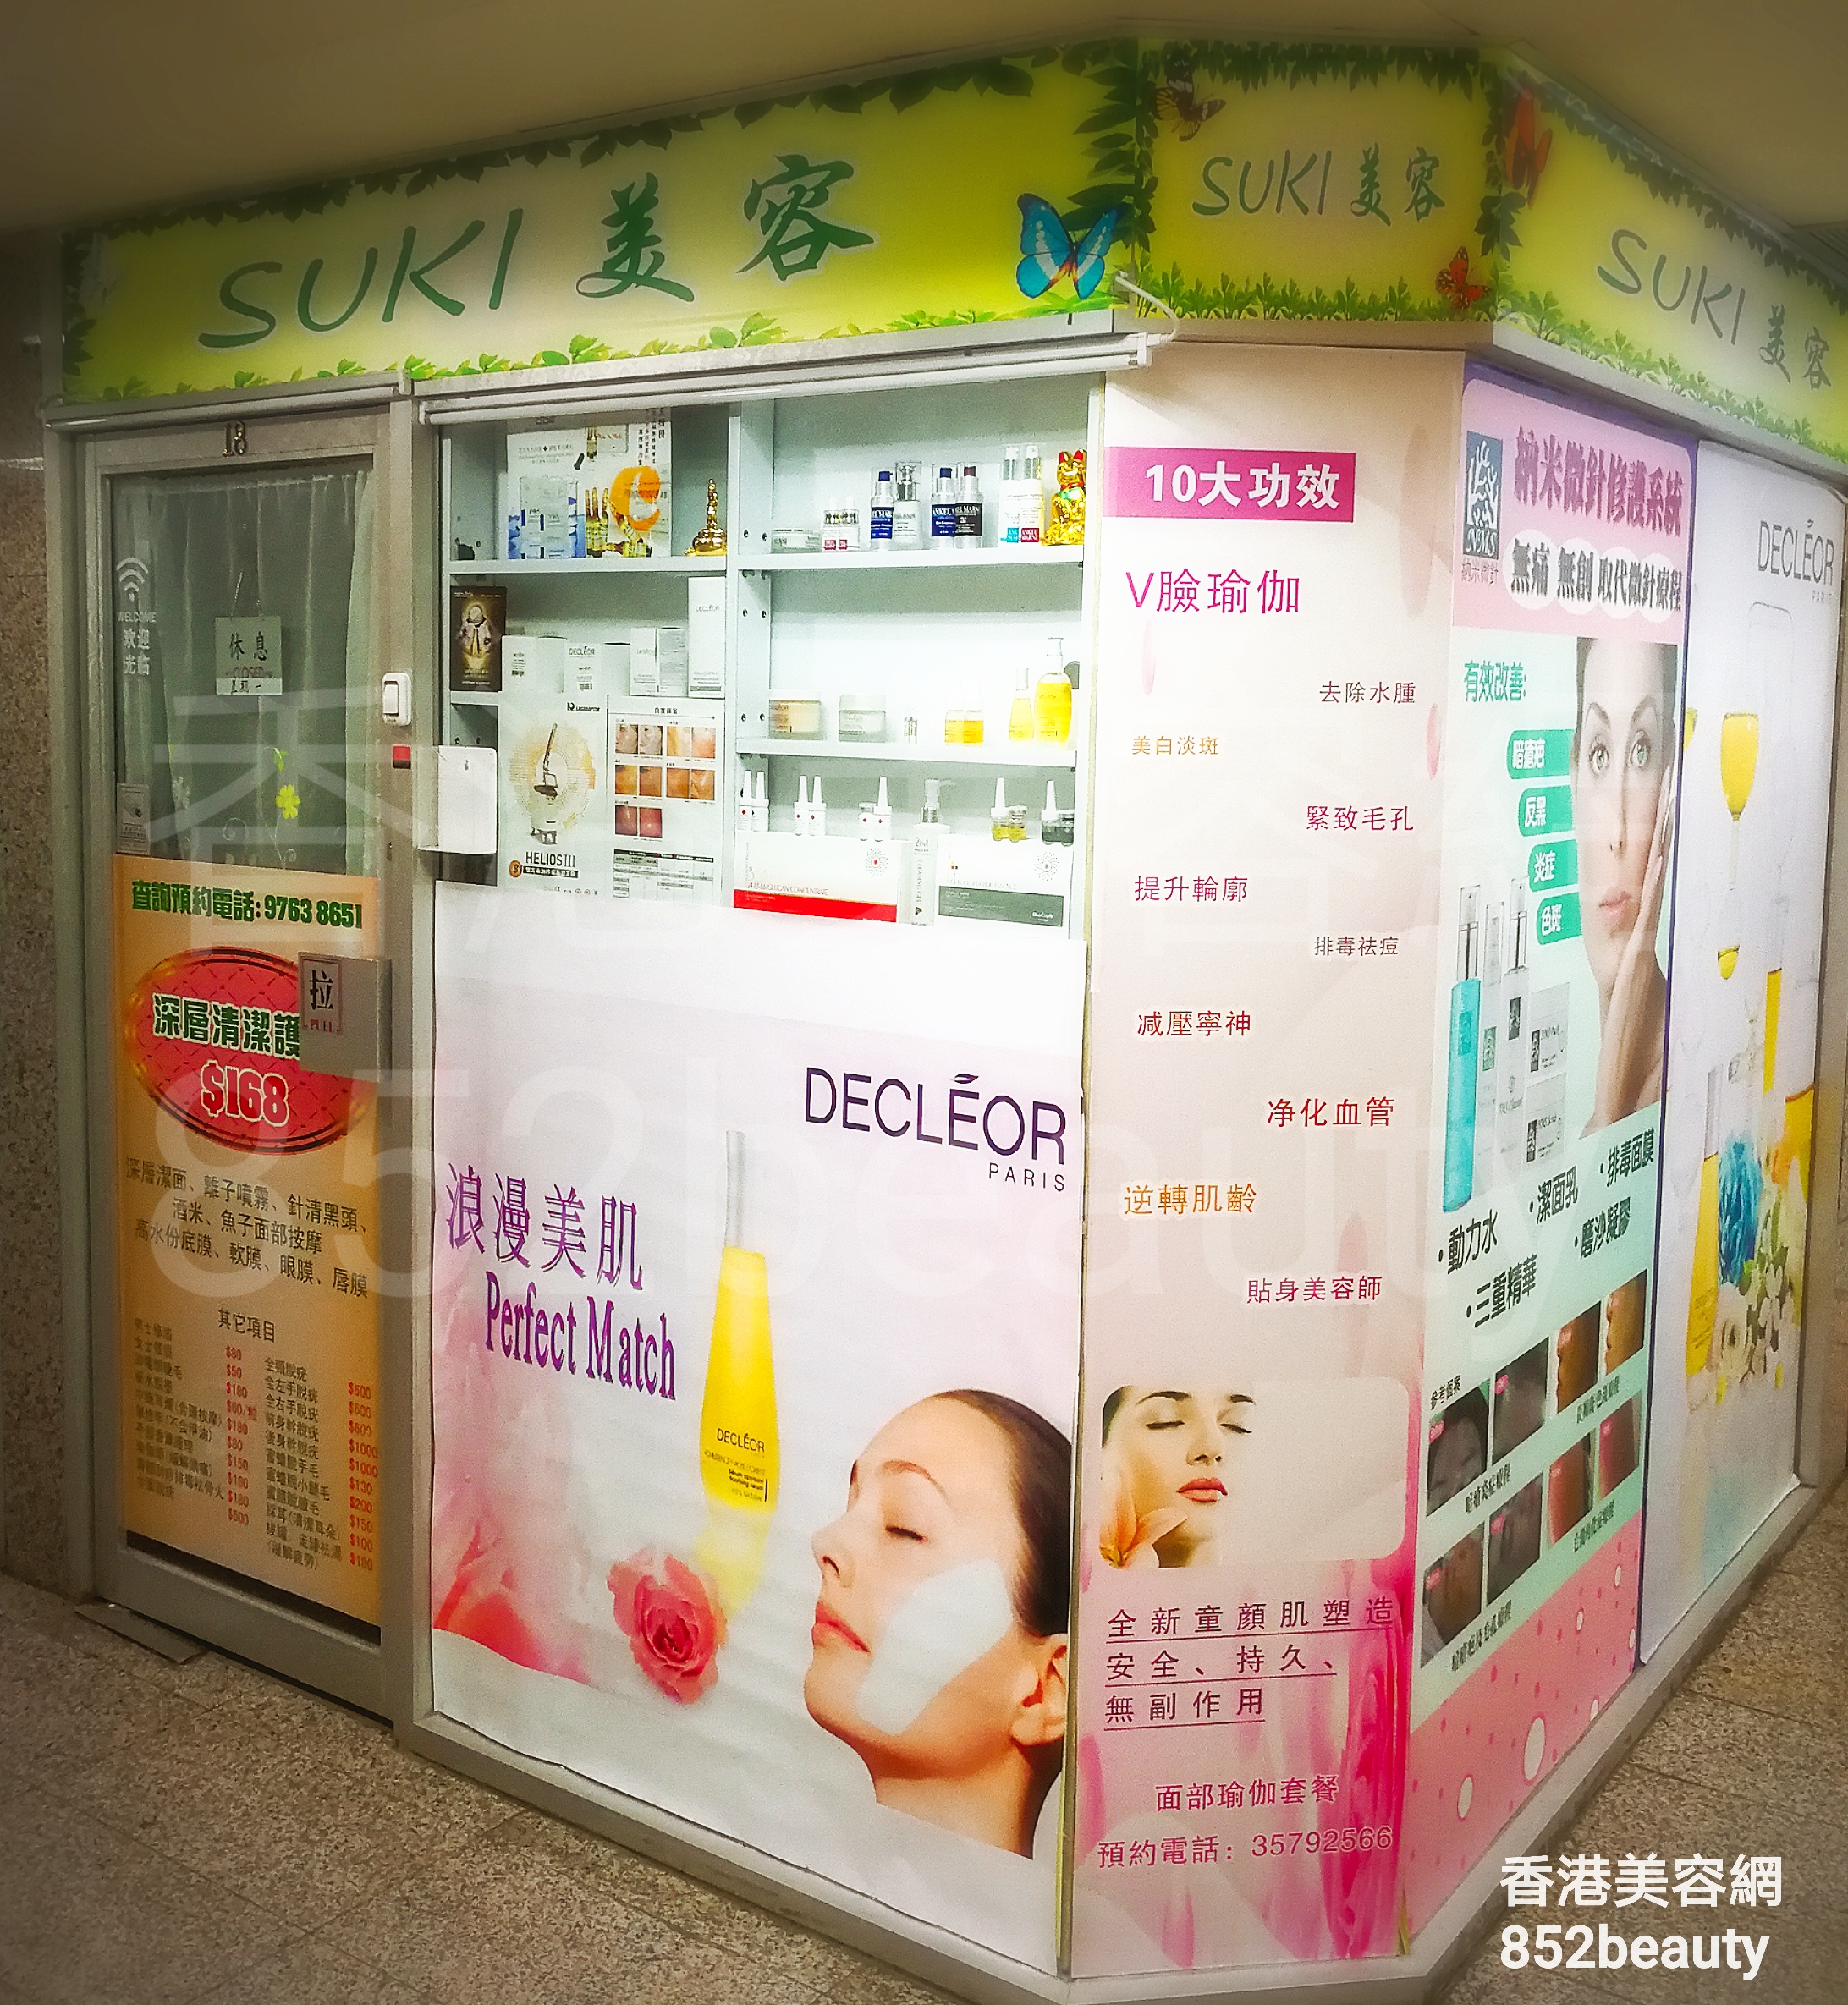 香港美容網 Hong Kong Beauty Salon 美容院 / 美容師: SUKI 美容